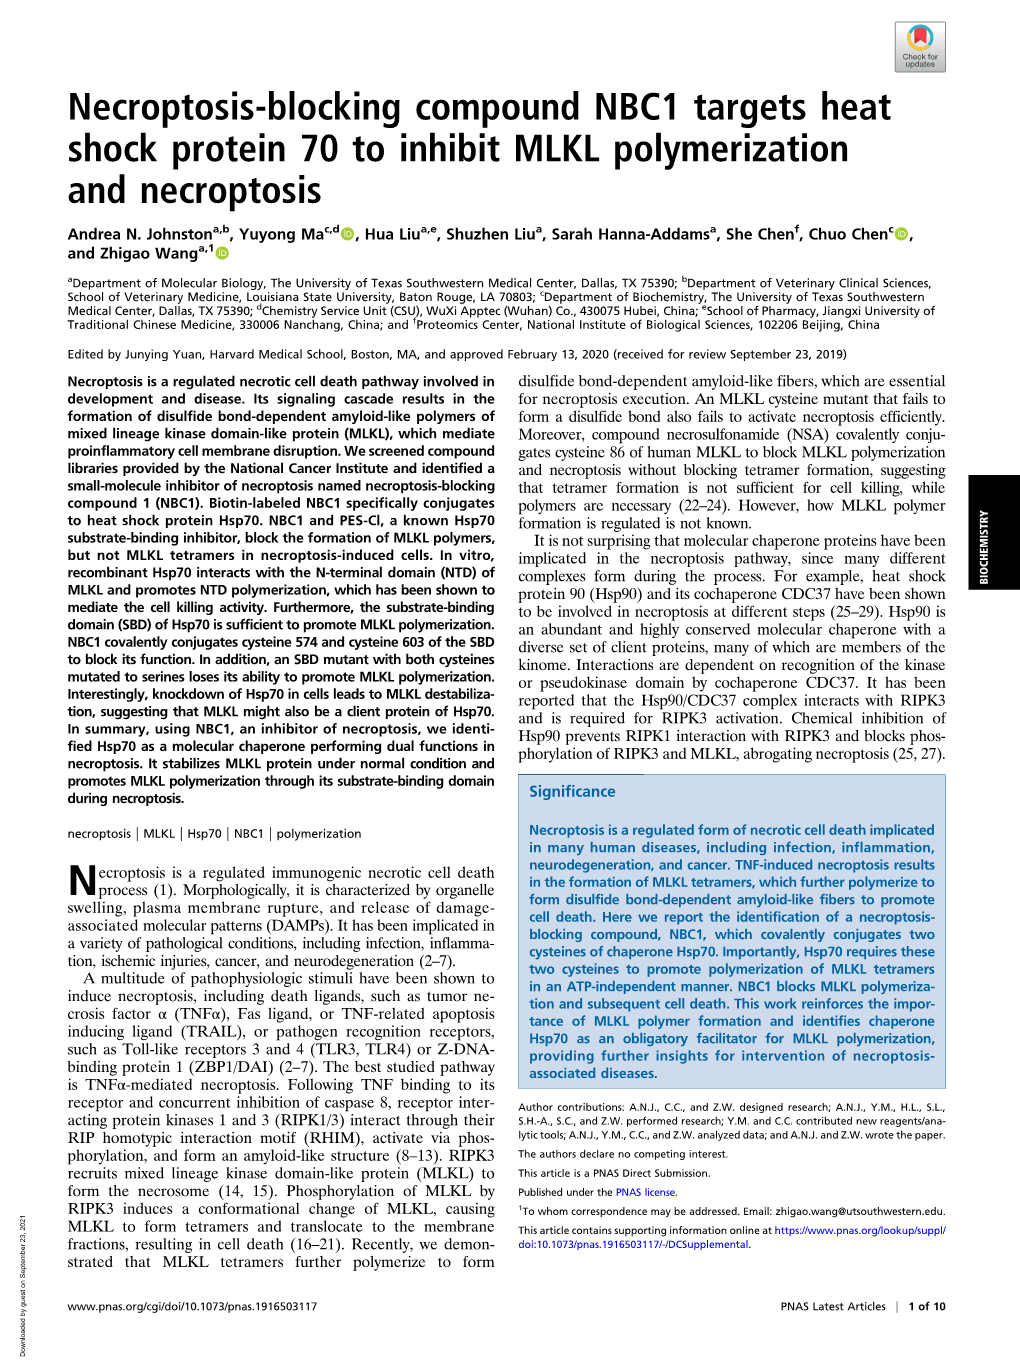 Necroptosis-Blocking Compound NBC1 Targets Heat Shock Protein 70 to Inhibit MLKL Polymerization and Necroptosis